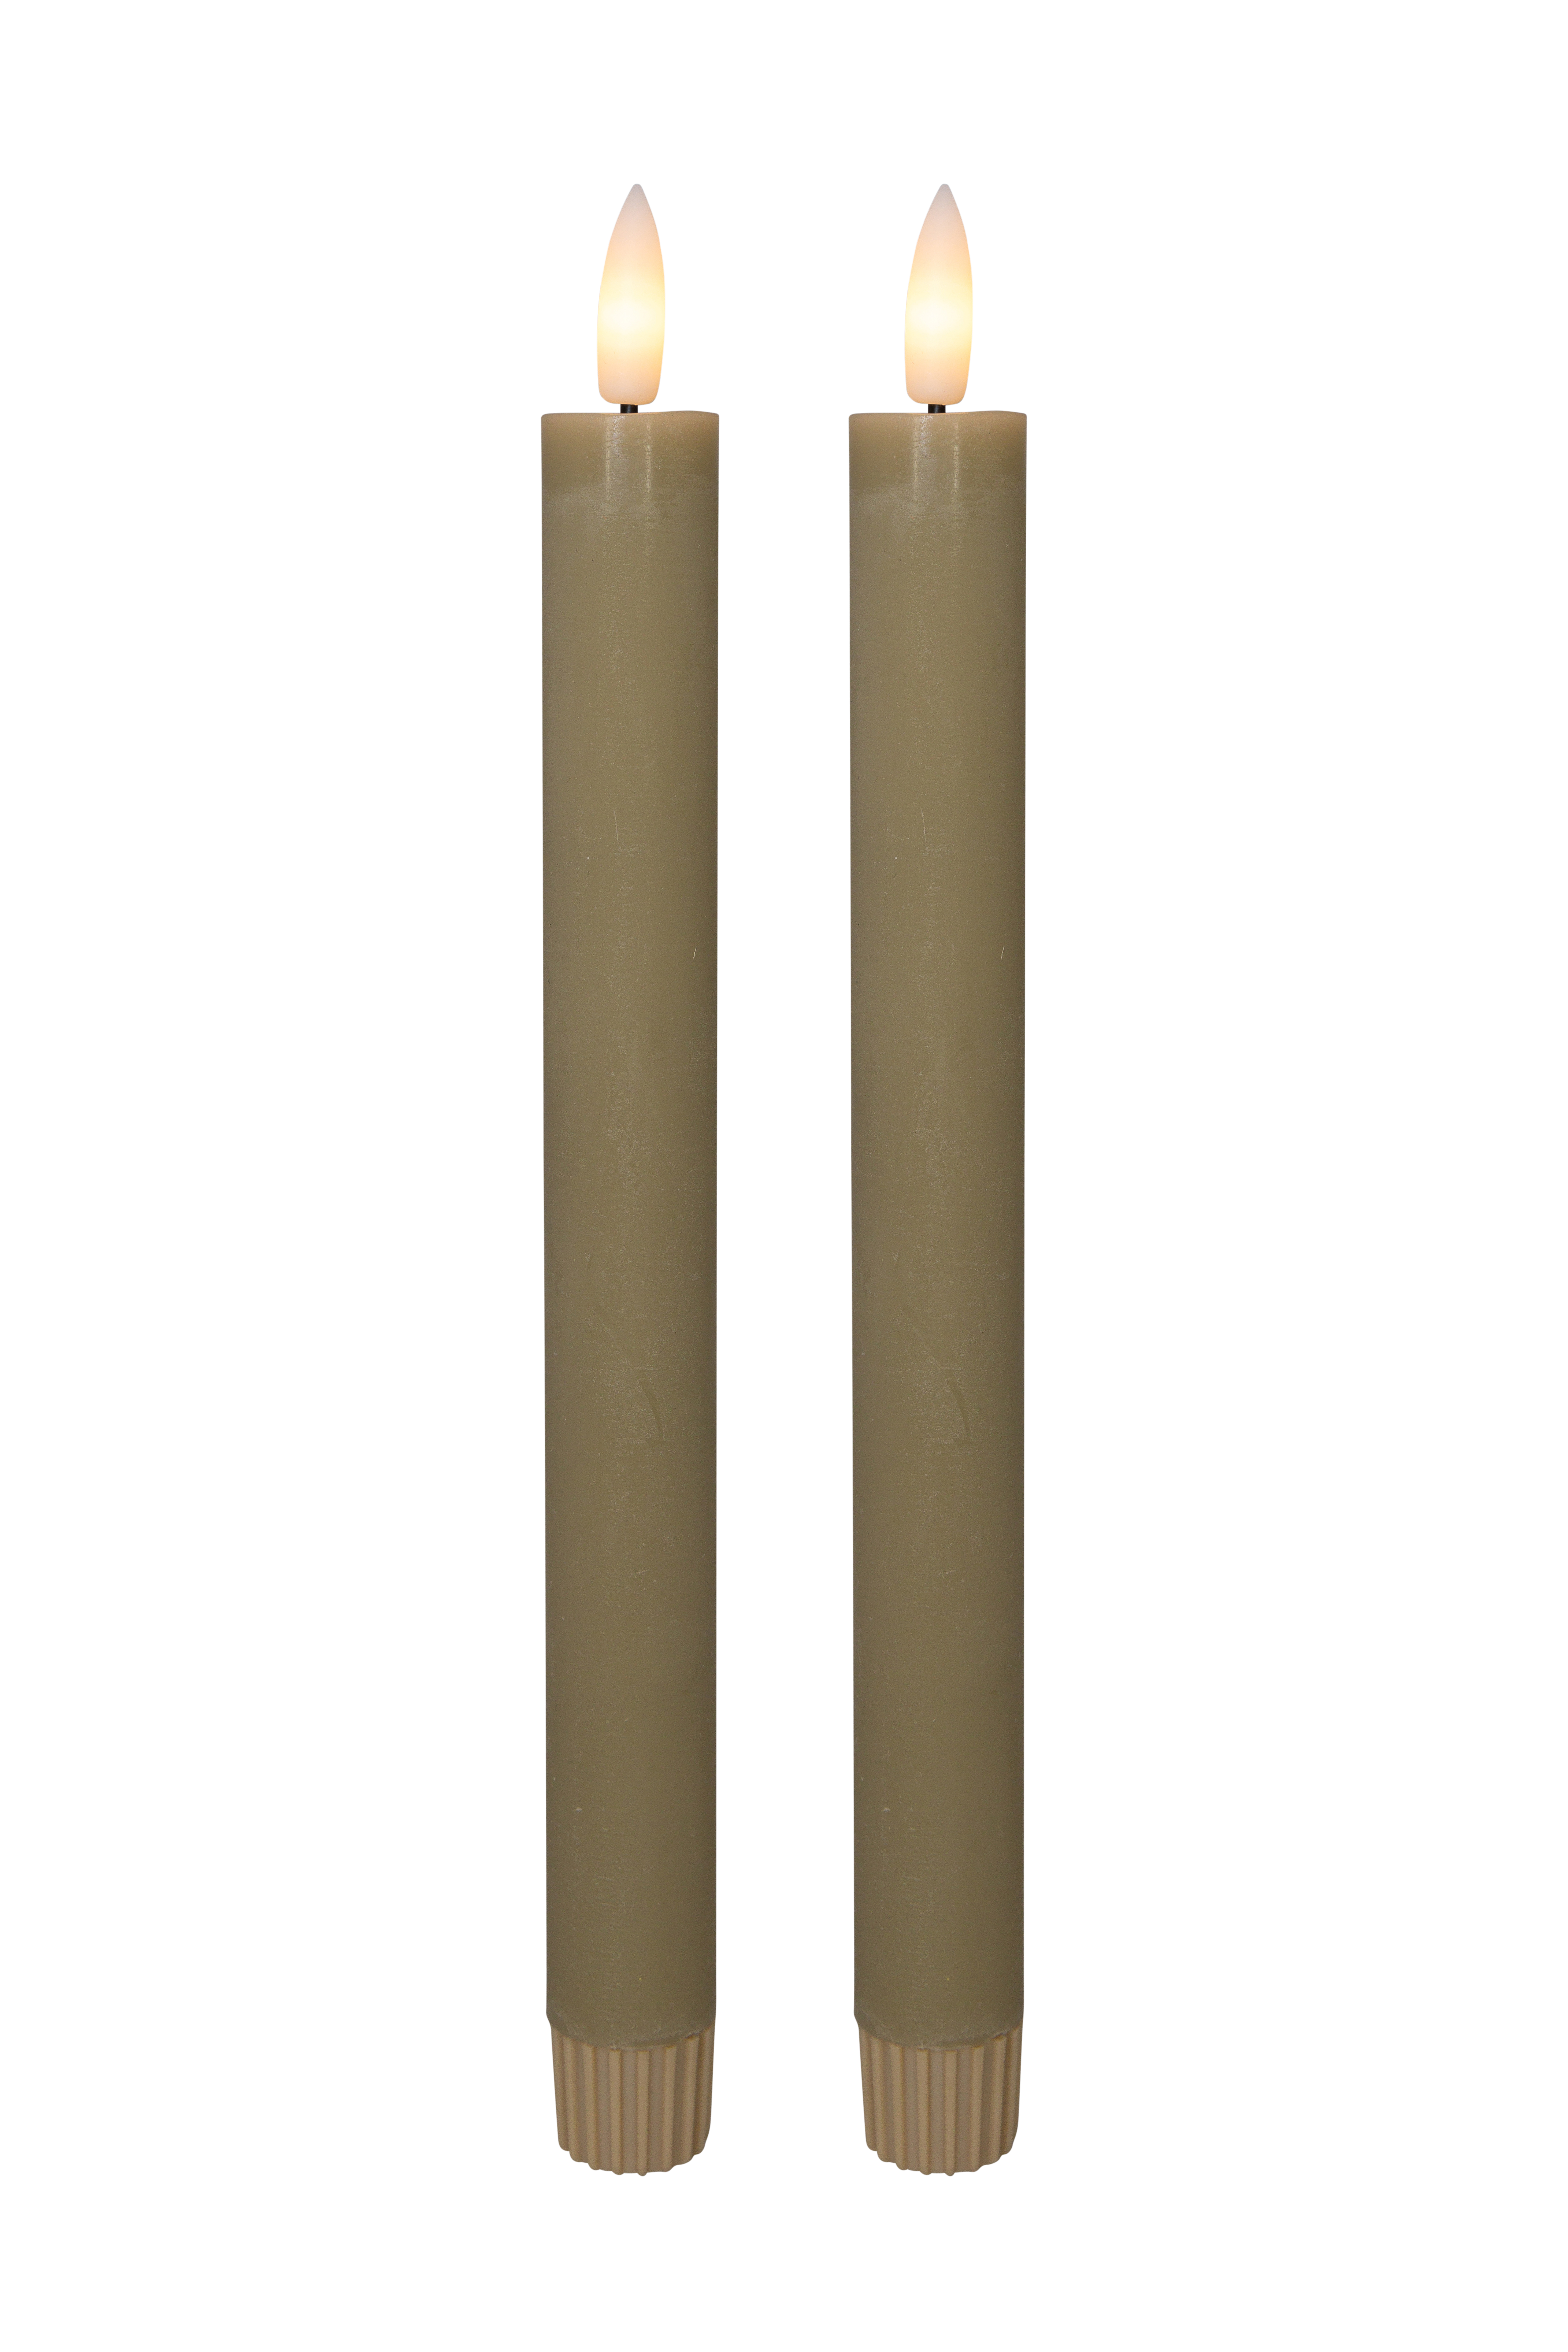 Cozzy kronelys, 3D flamme, 22,2 cm, sand, 2 stk (bruges med fjernbetjening)